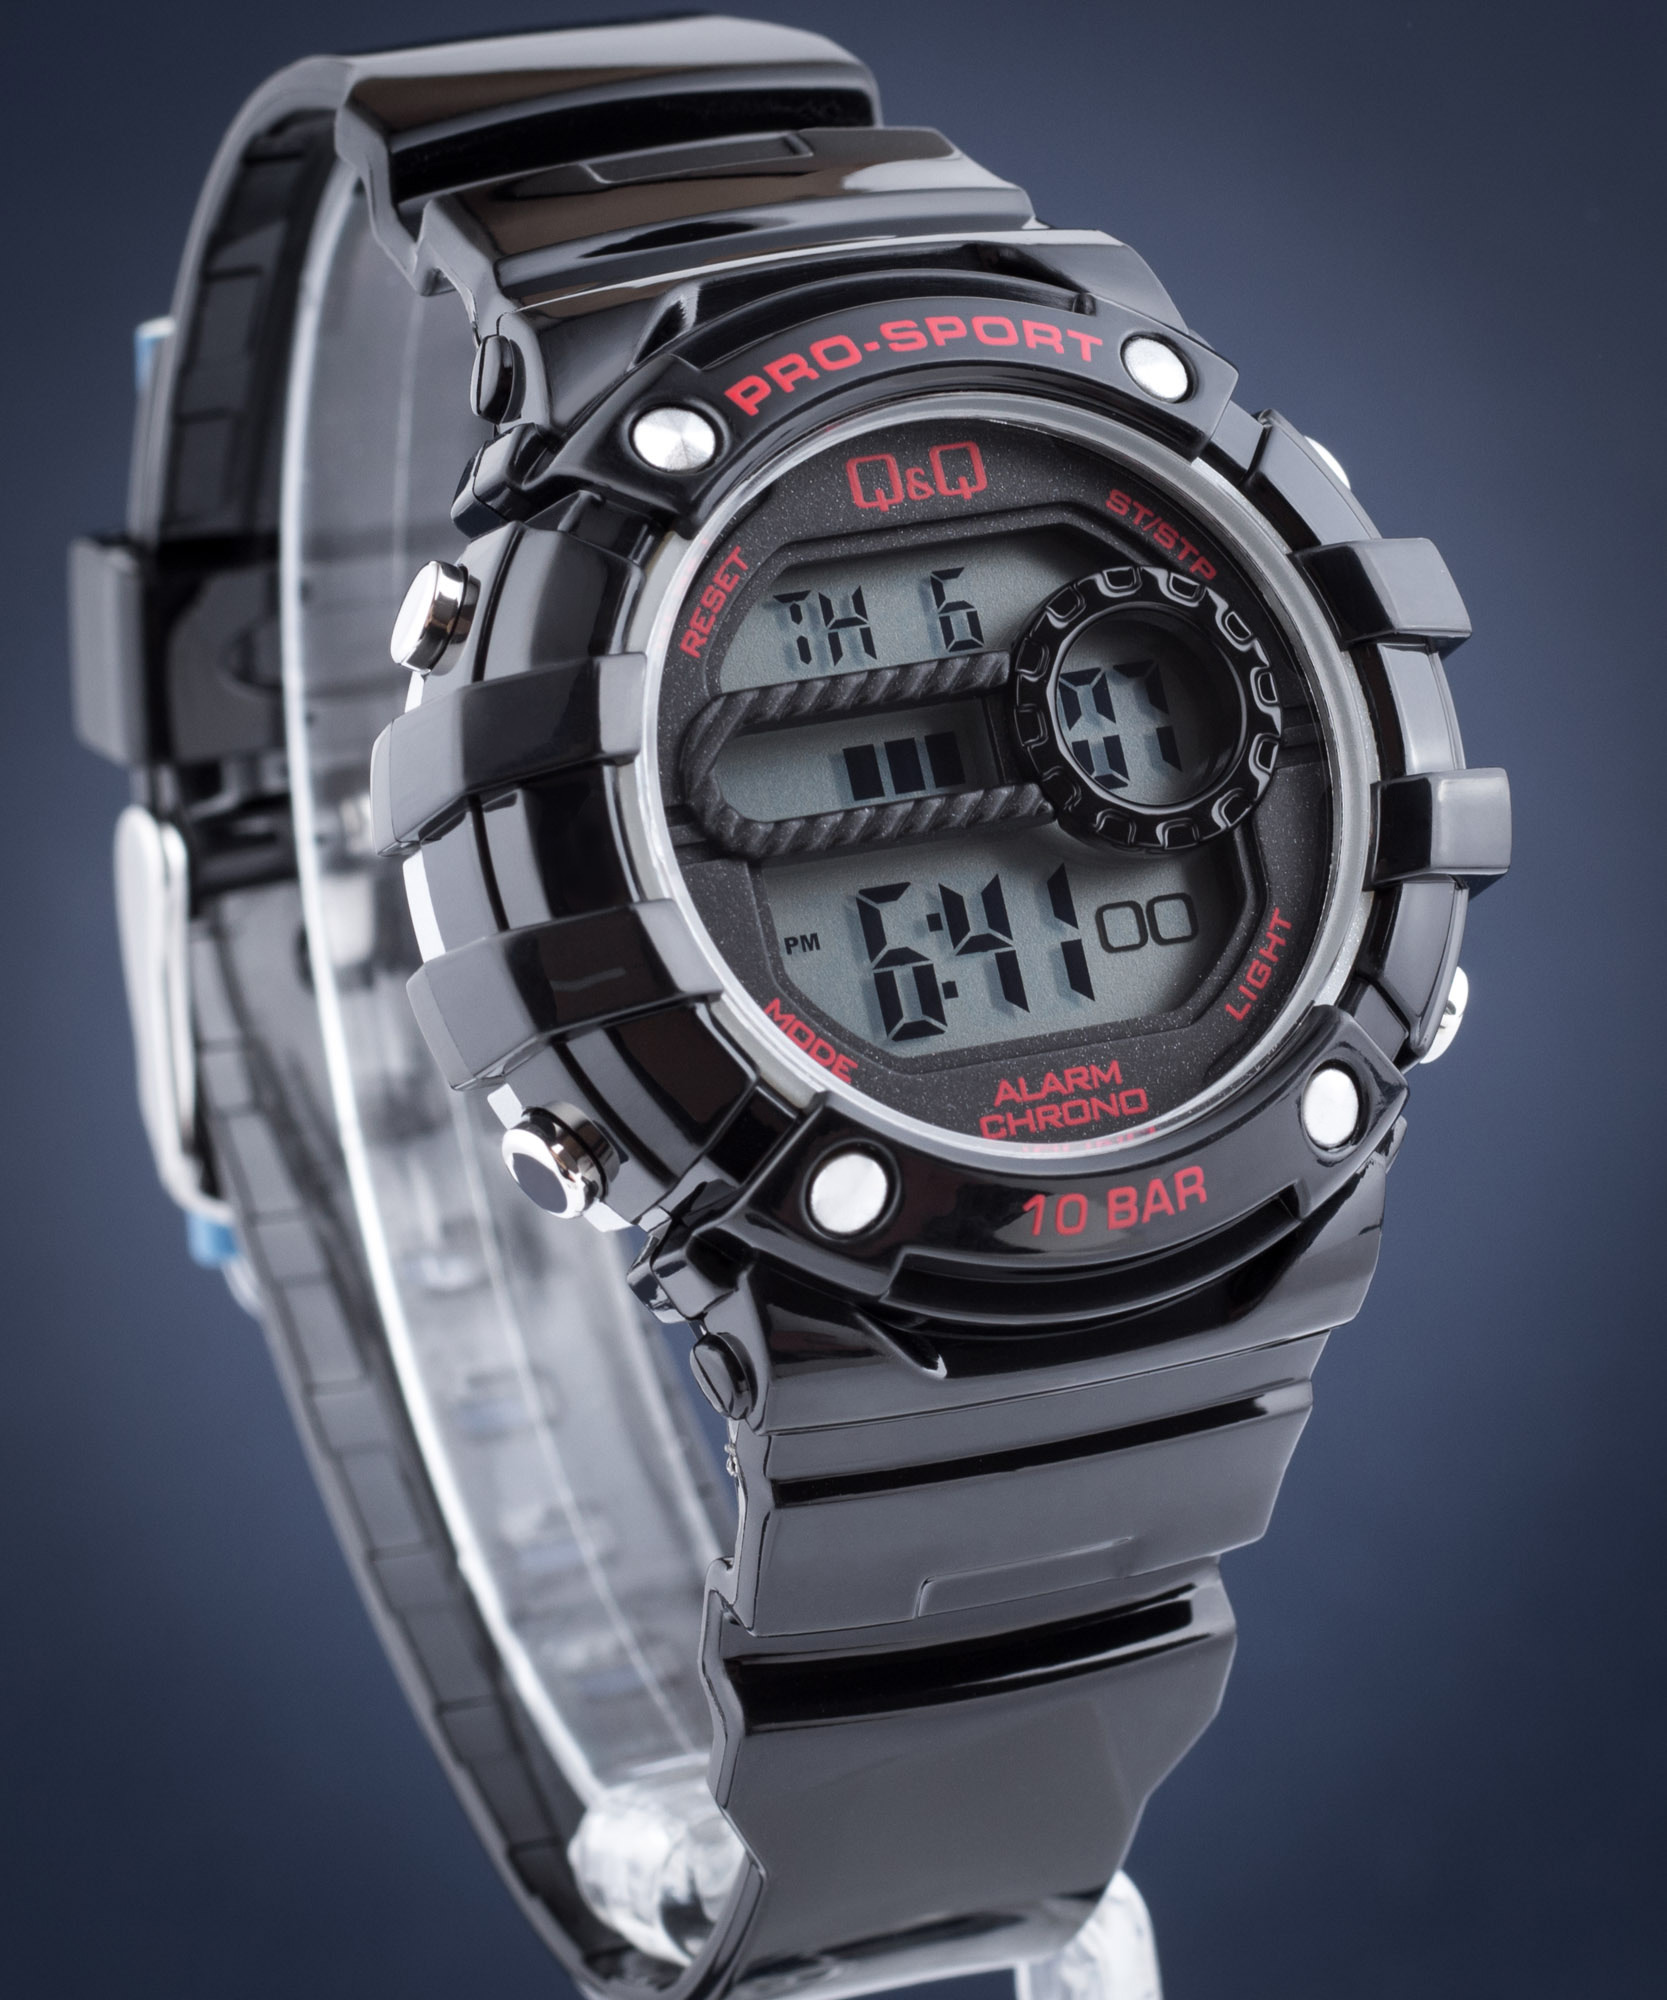 græs Indtil nu Foreman Q&Q M154-001 - LCD Pro-Sport Watch • Watchard.com